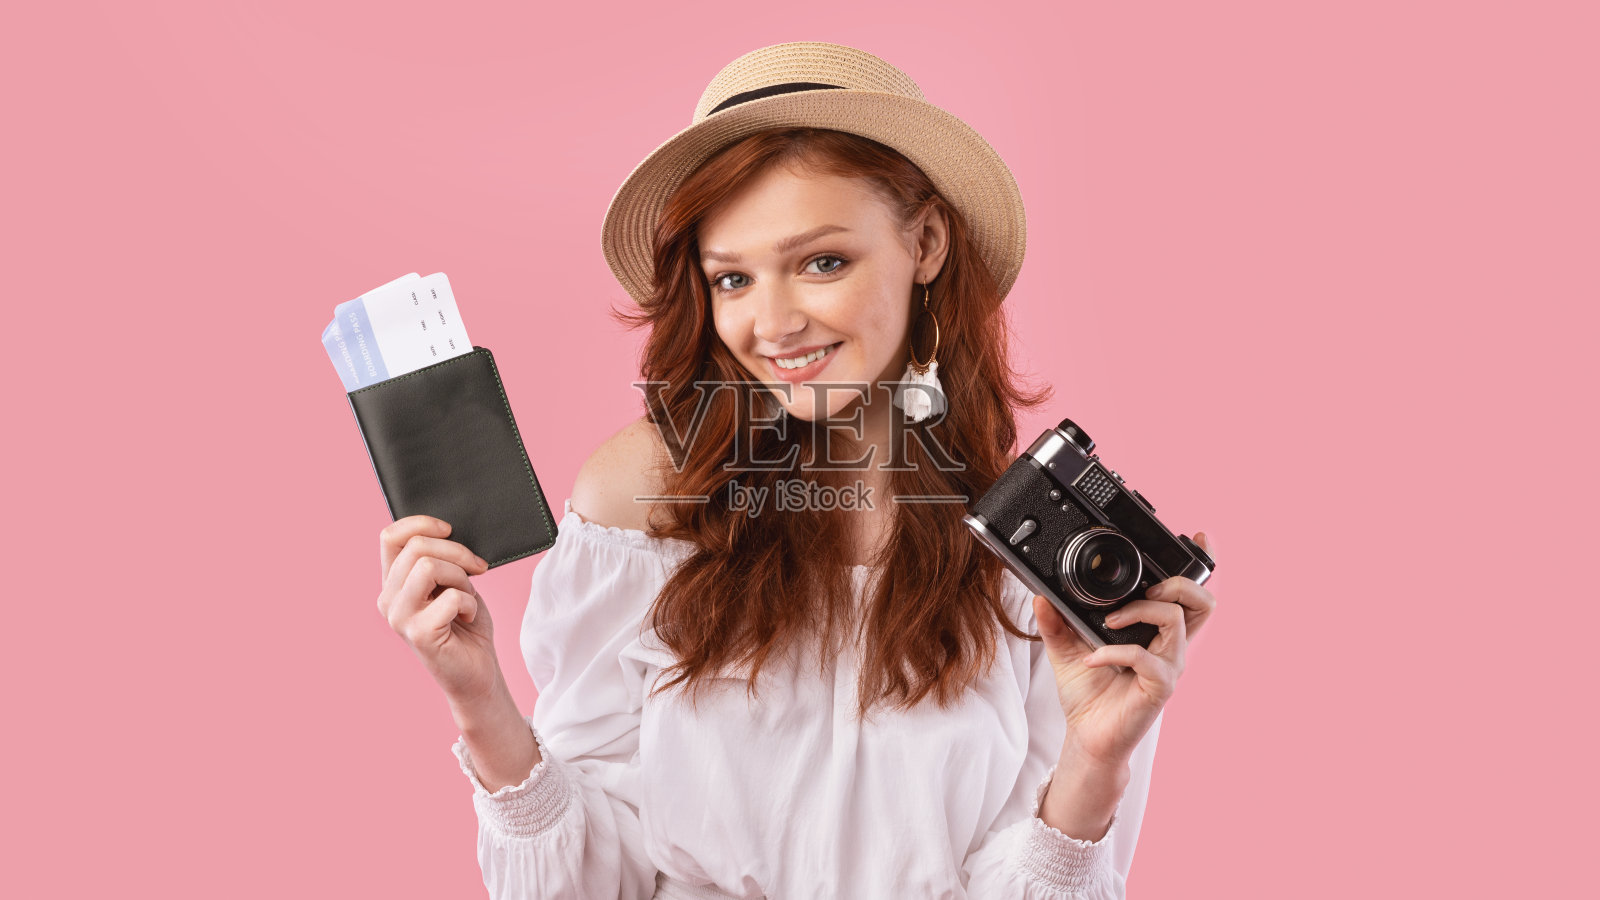 可爱的旅行者女孩拿着票和相机在粉红色的背景照片摄影图片